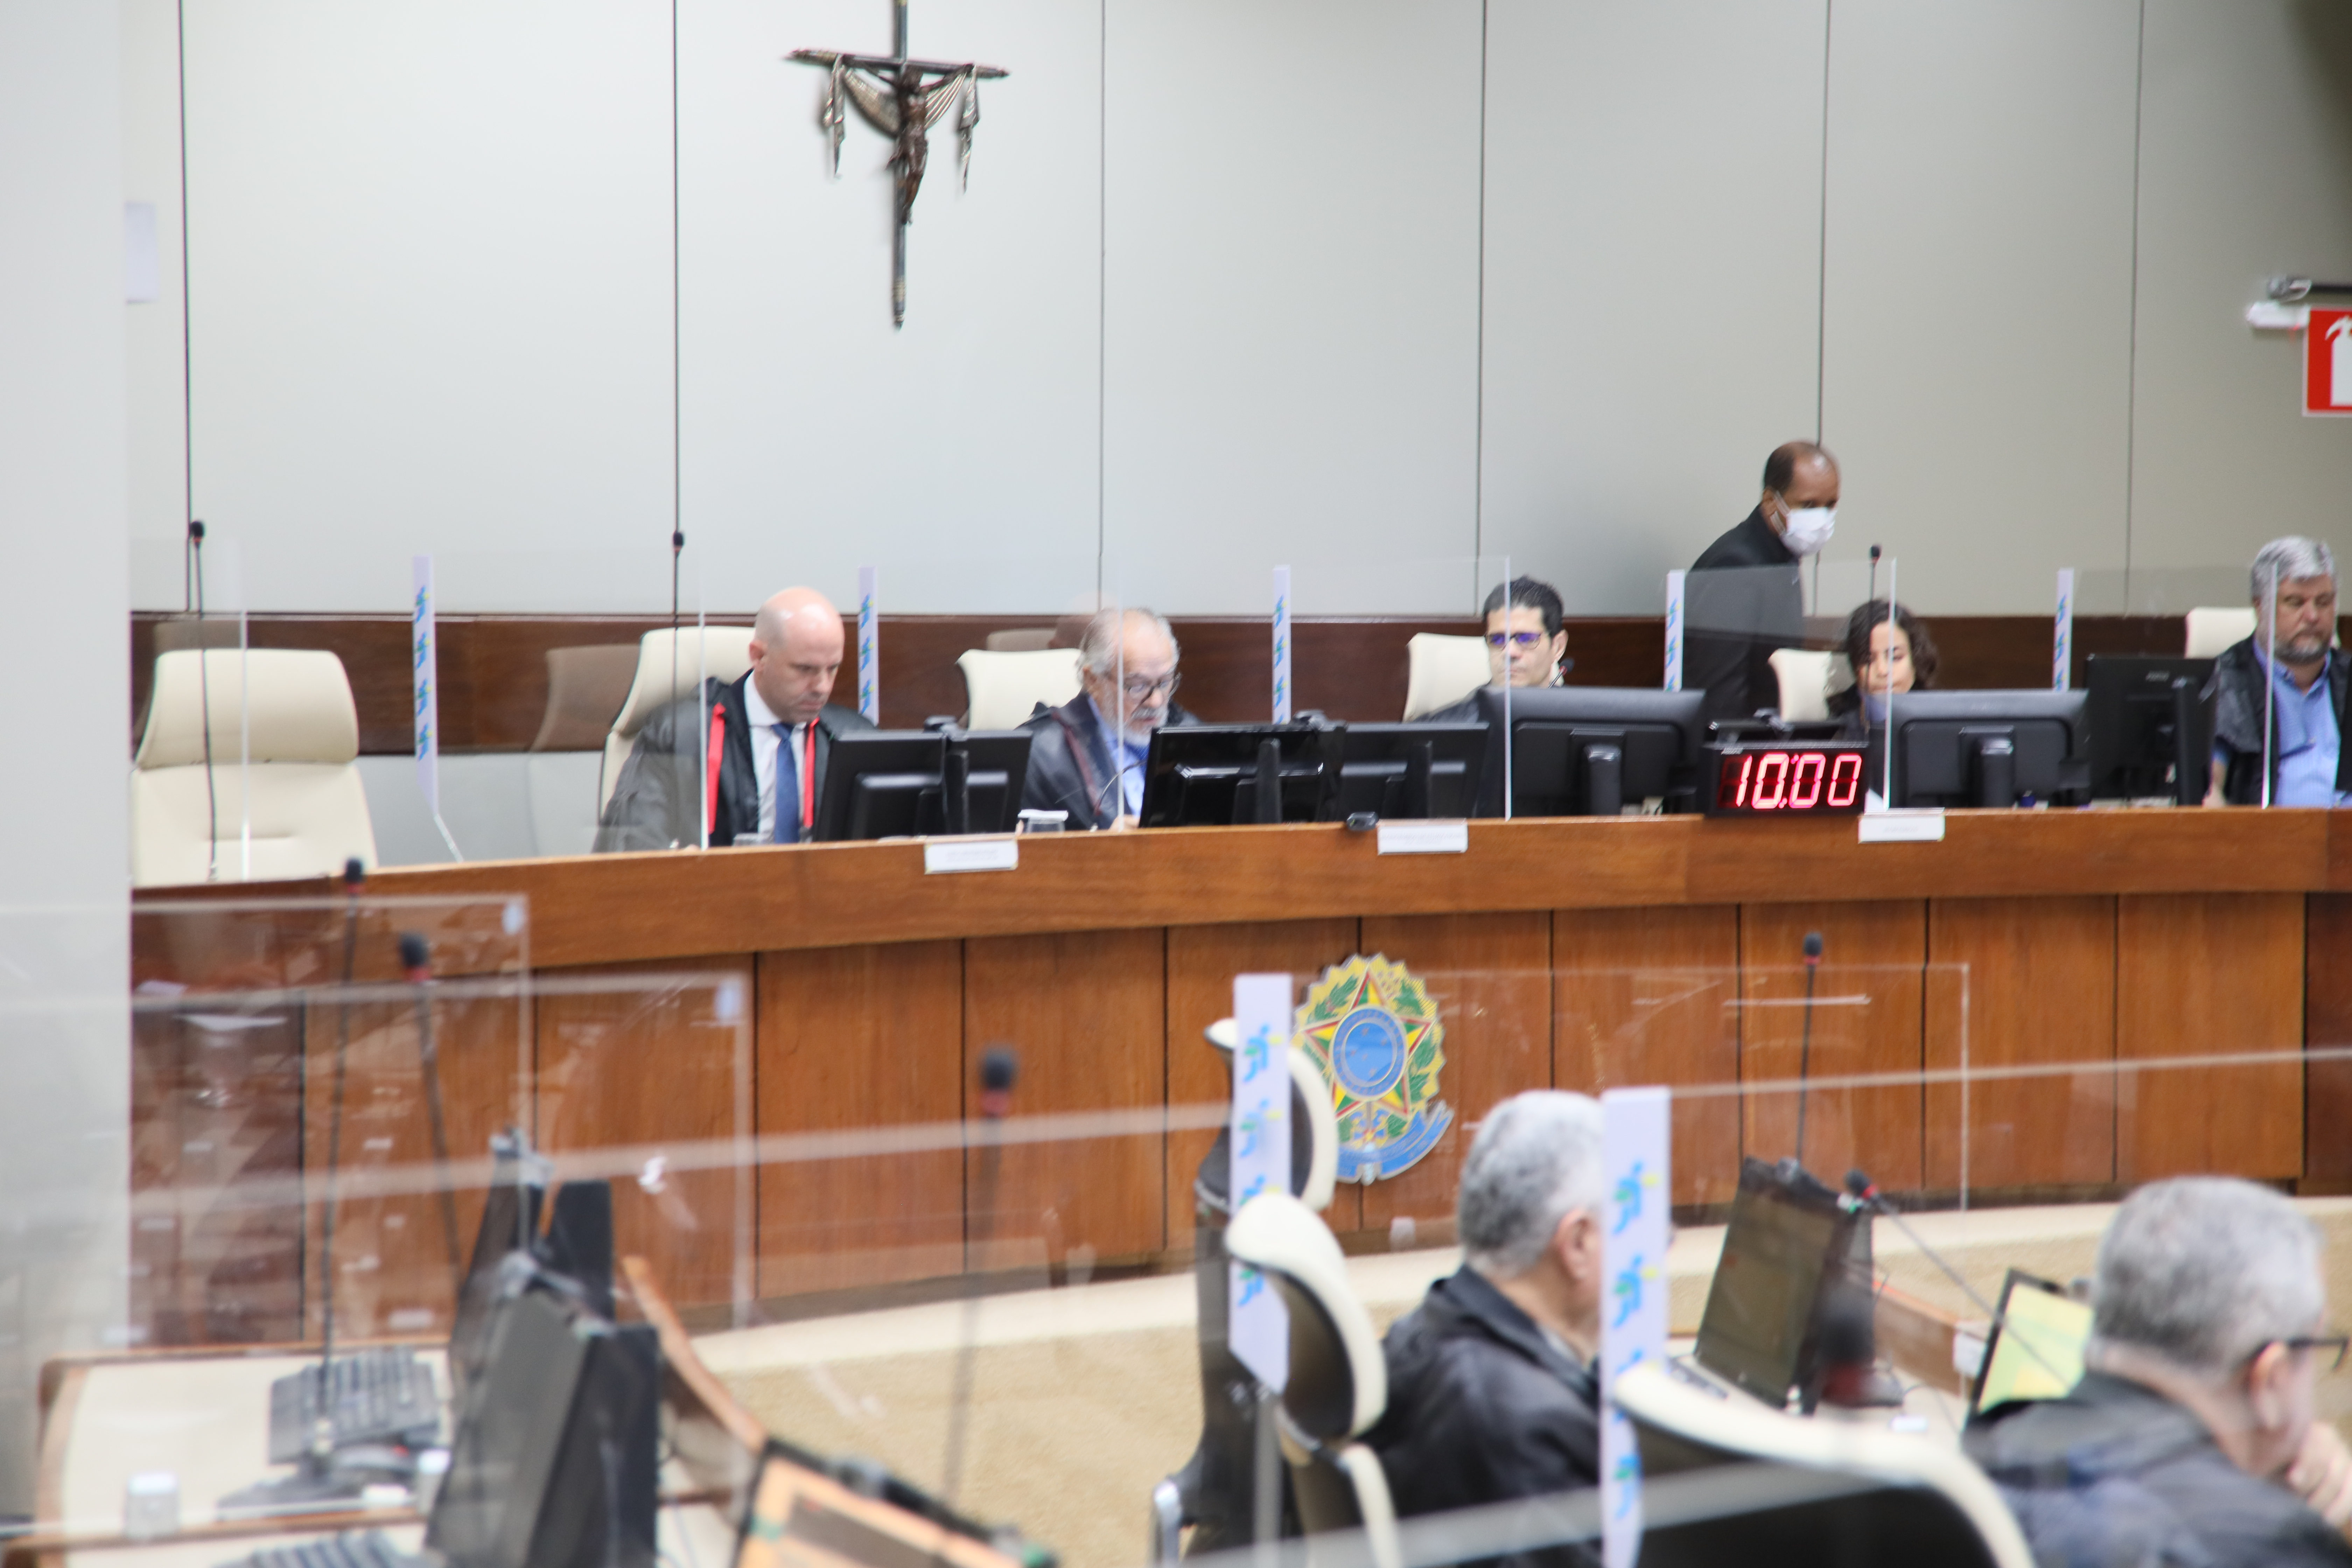 Imagem de sessão do Órgão Especial no dia 5 de maio. Temos o vice-presidente ao centro da mesa no Tribunal Pleno